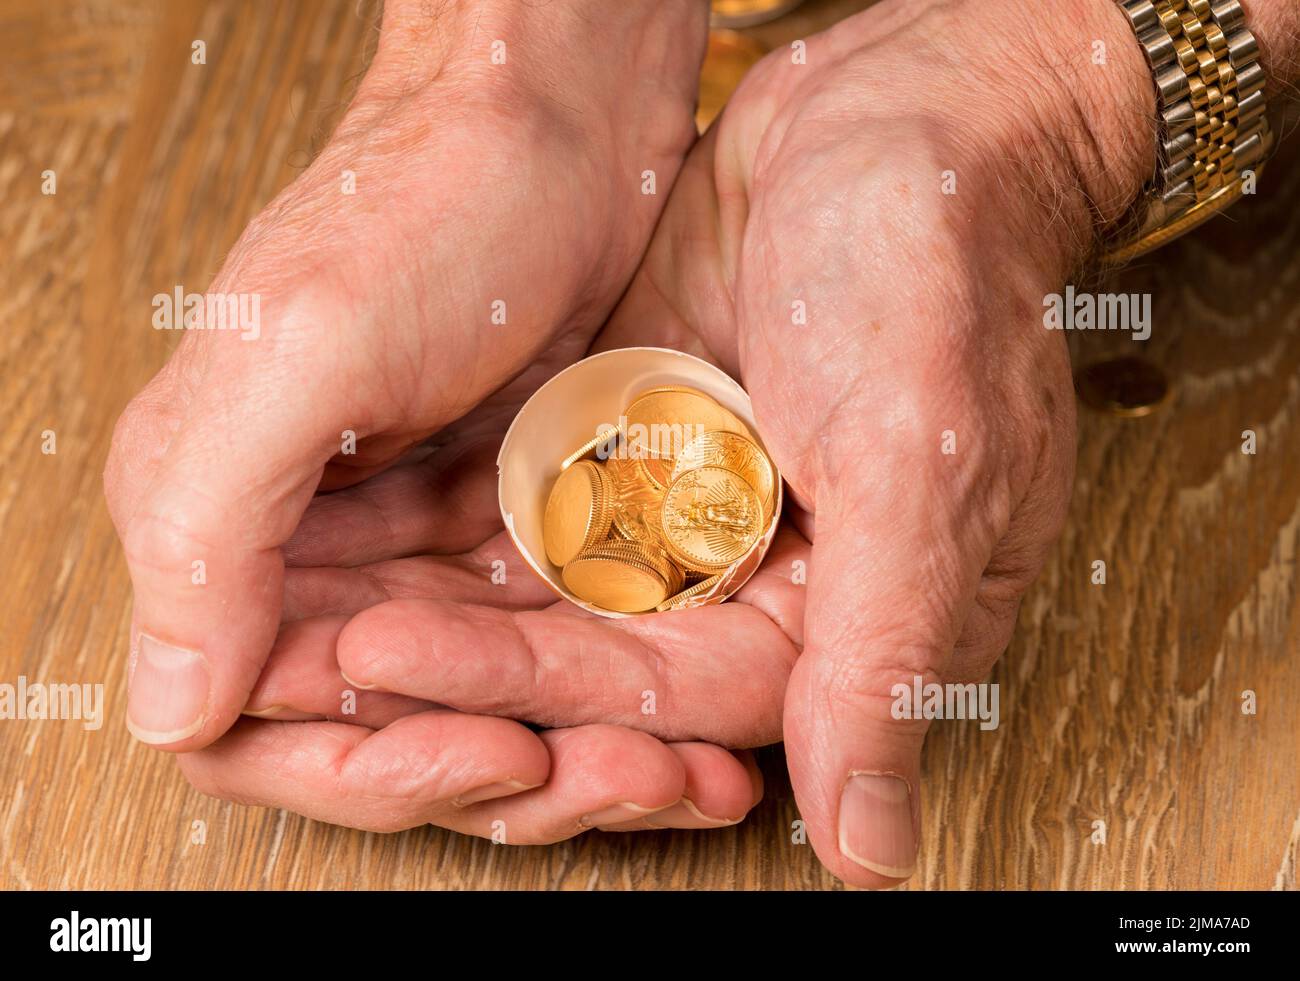 Monedas de oro puro en cáscara de huevo ilustrando el huevo del nido Foto de stock